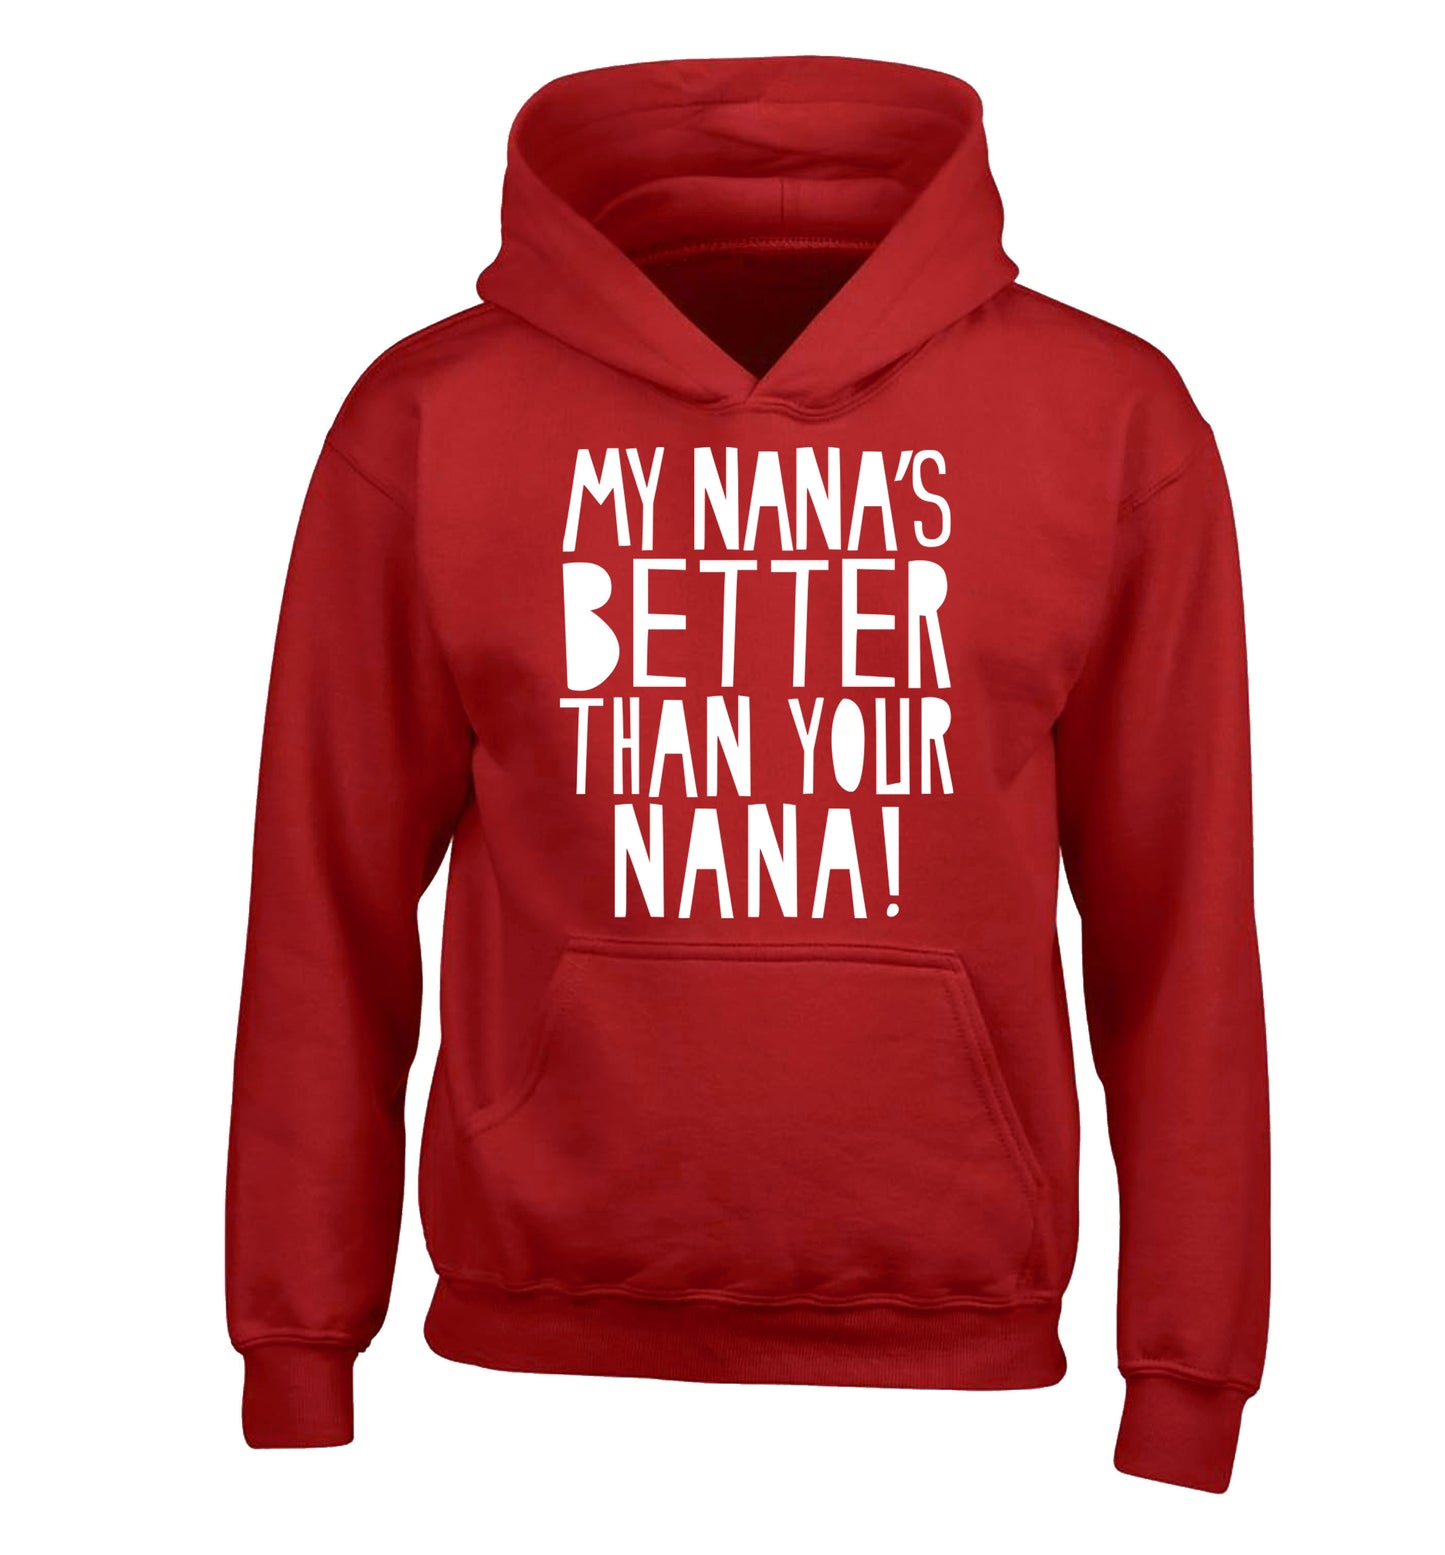 My nana's better than your nana children's red hoodie 12-13 Years